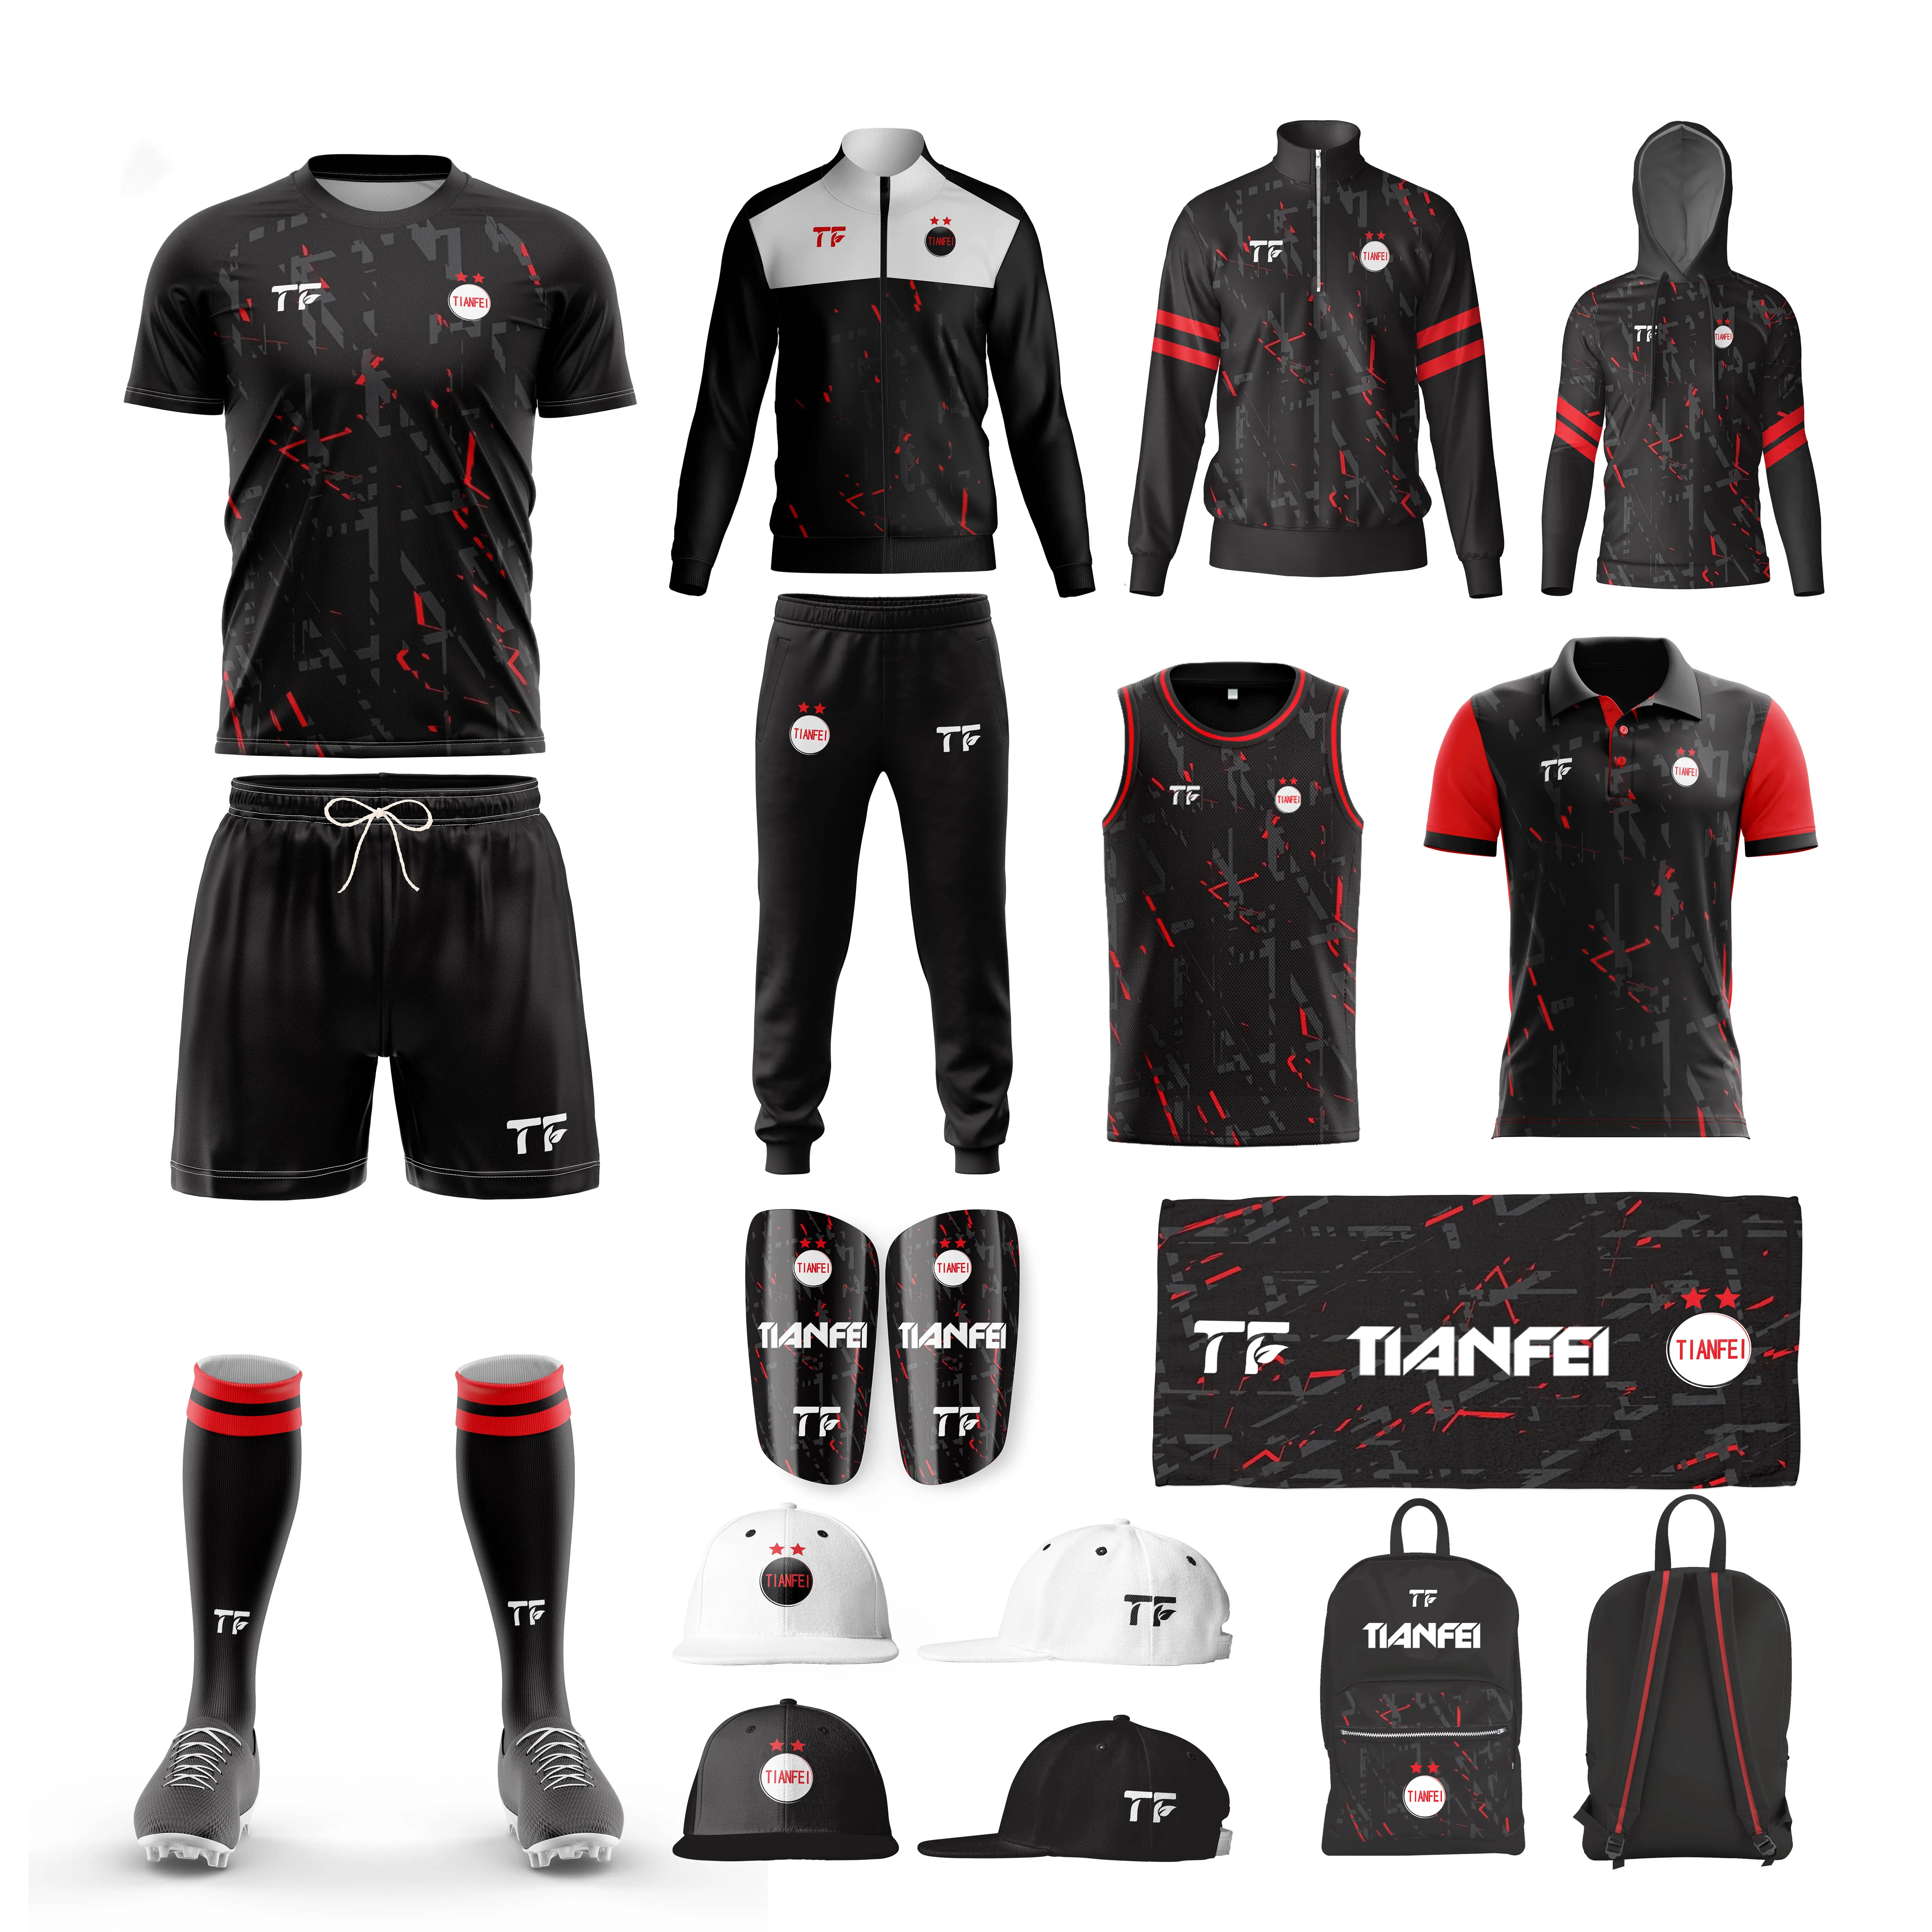 Maillot de football personnalisé TF kit de football maillot de football à séchage rapide ensemble d'uniformes de football maillot de football noir sublimé